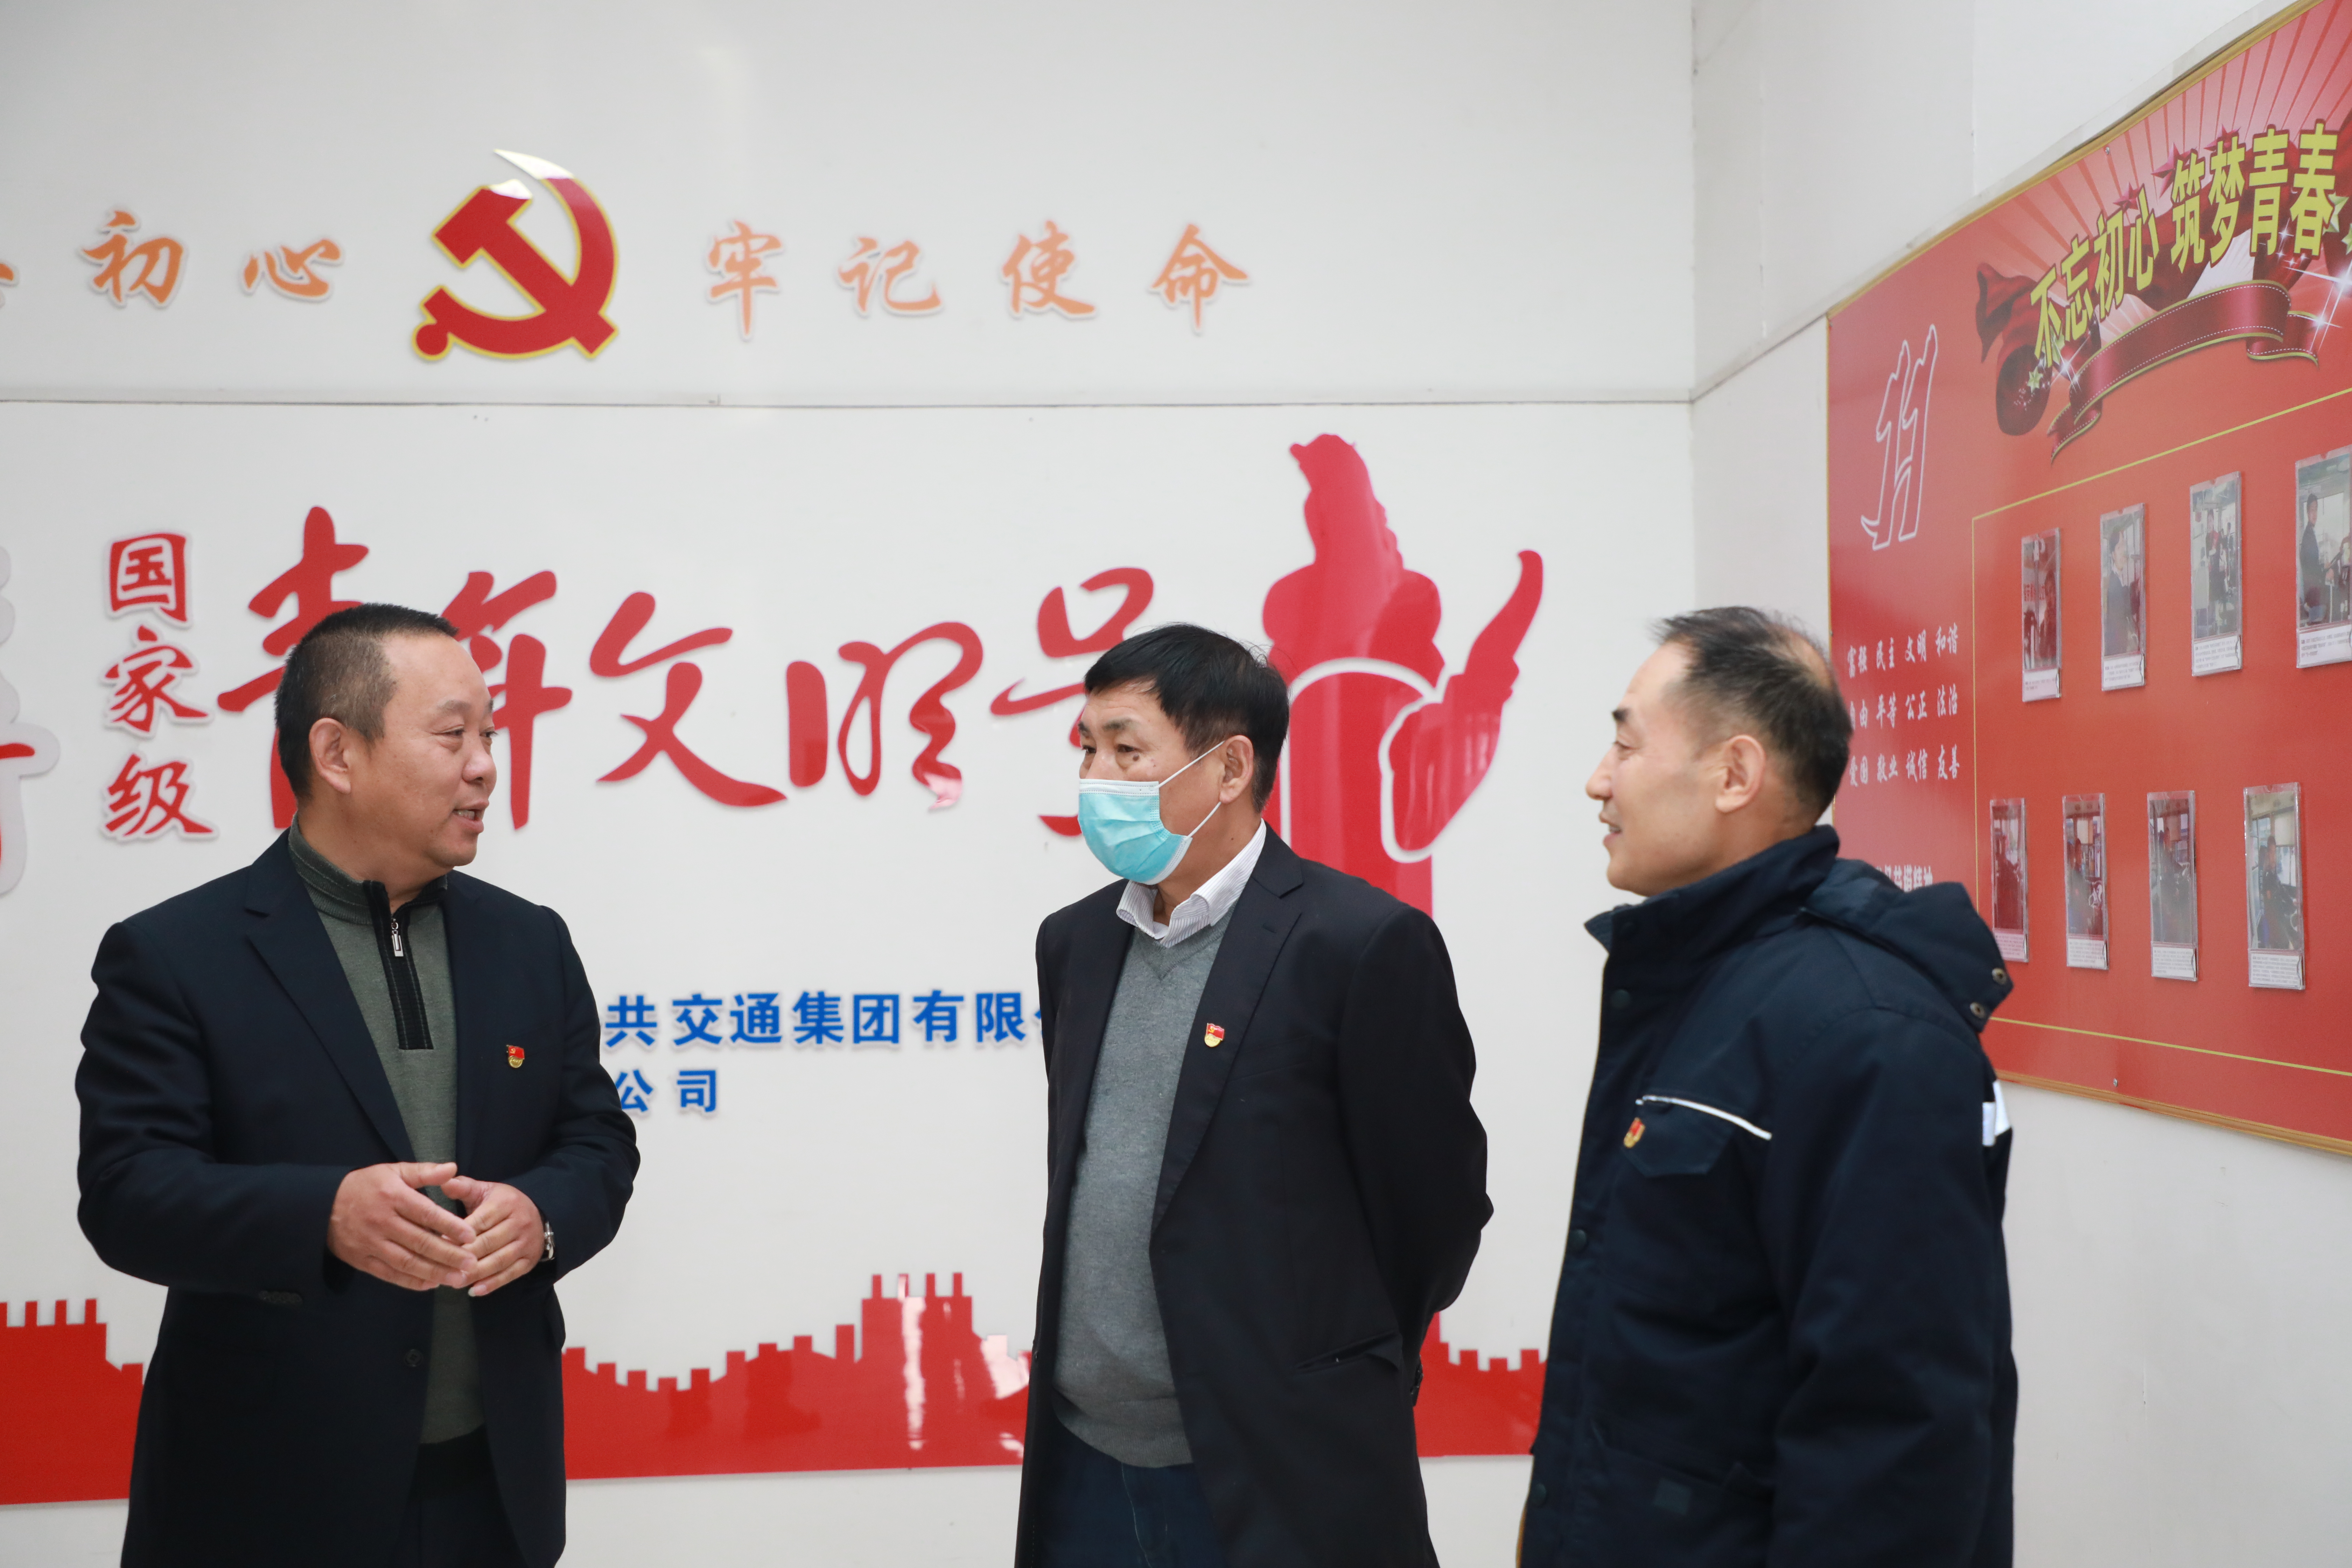 集团党委副书记、总经理吴昊到公交新区党支部加入主题党日运动